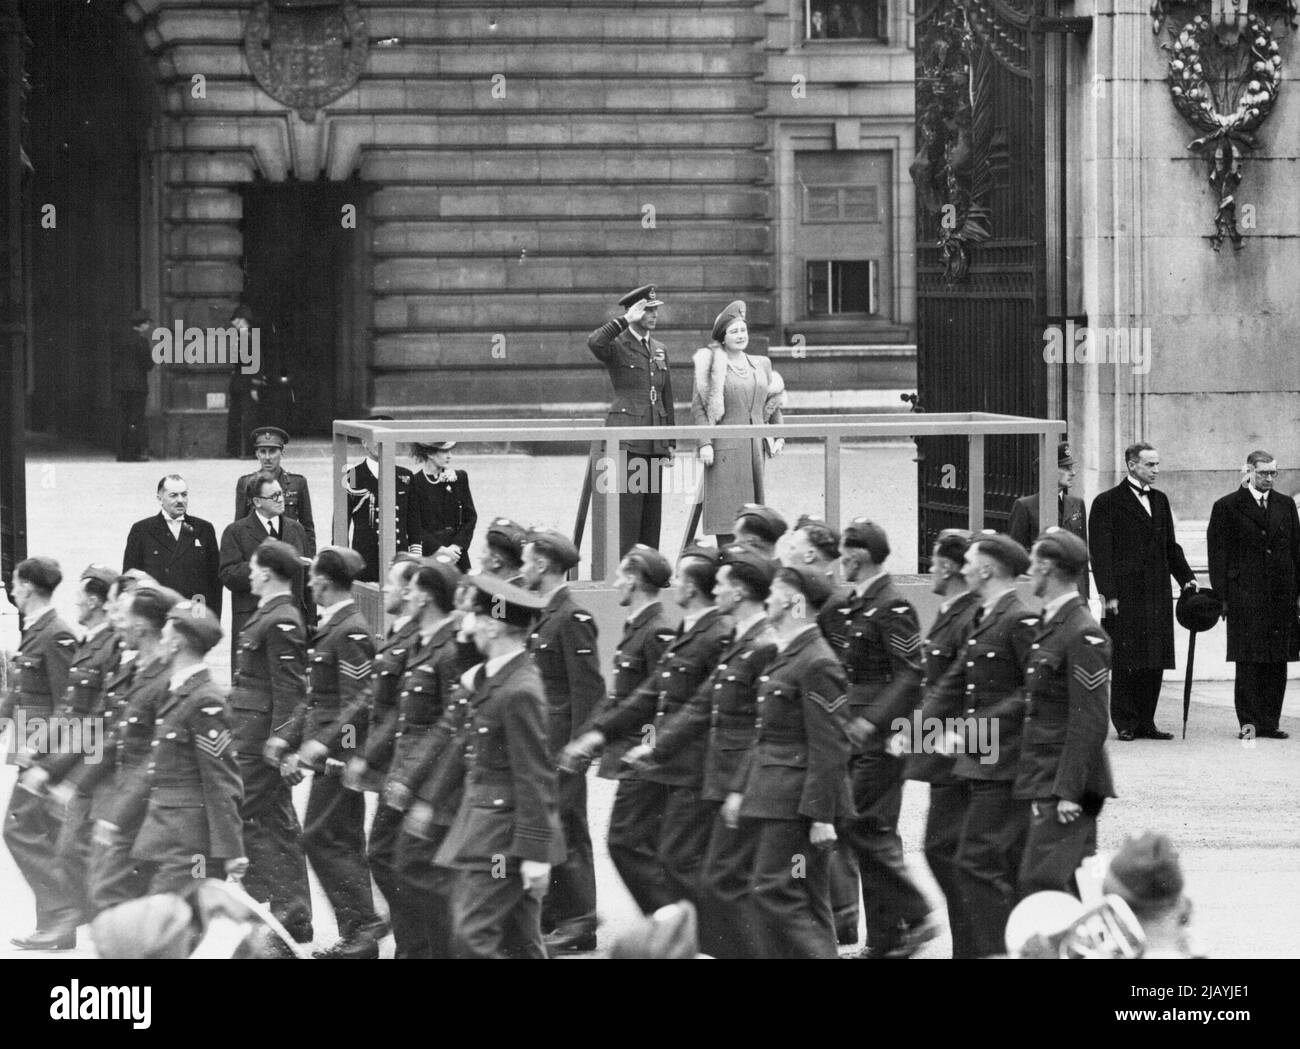 'Battle of Britain' Sonntag - Mitglieder der Royal Air Force passieren die saluierende Basis. Seine Majestät der König, nahm den Gruß eines Marsch Pat, zum Gedenken an den Sieg der Schlacht von Großbritannien, gestern (so). 28. Dezember 1943. (Foto von LNA). Stockfoto